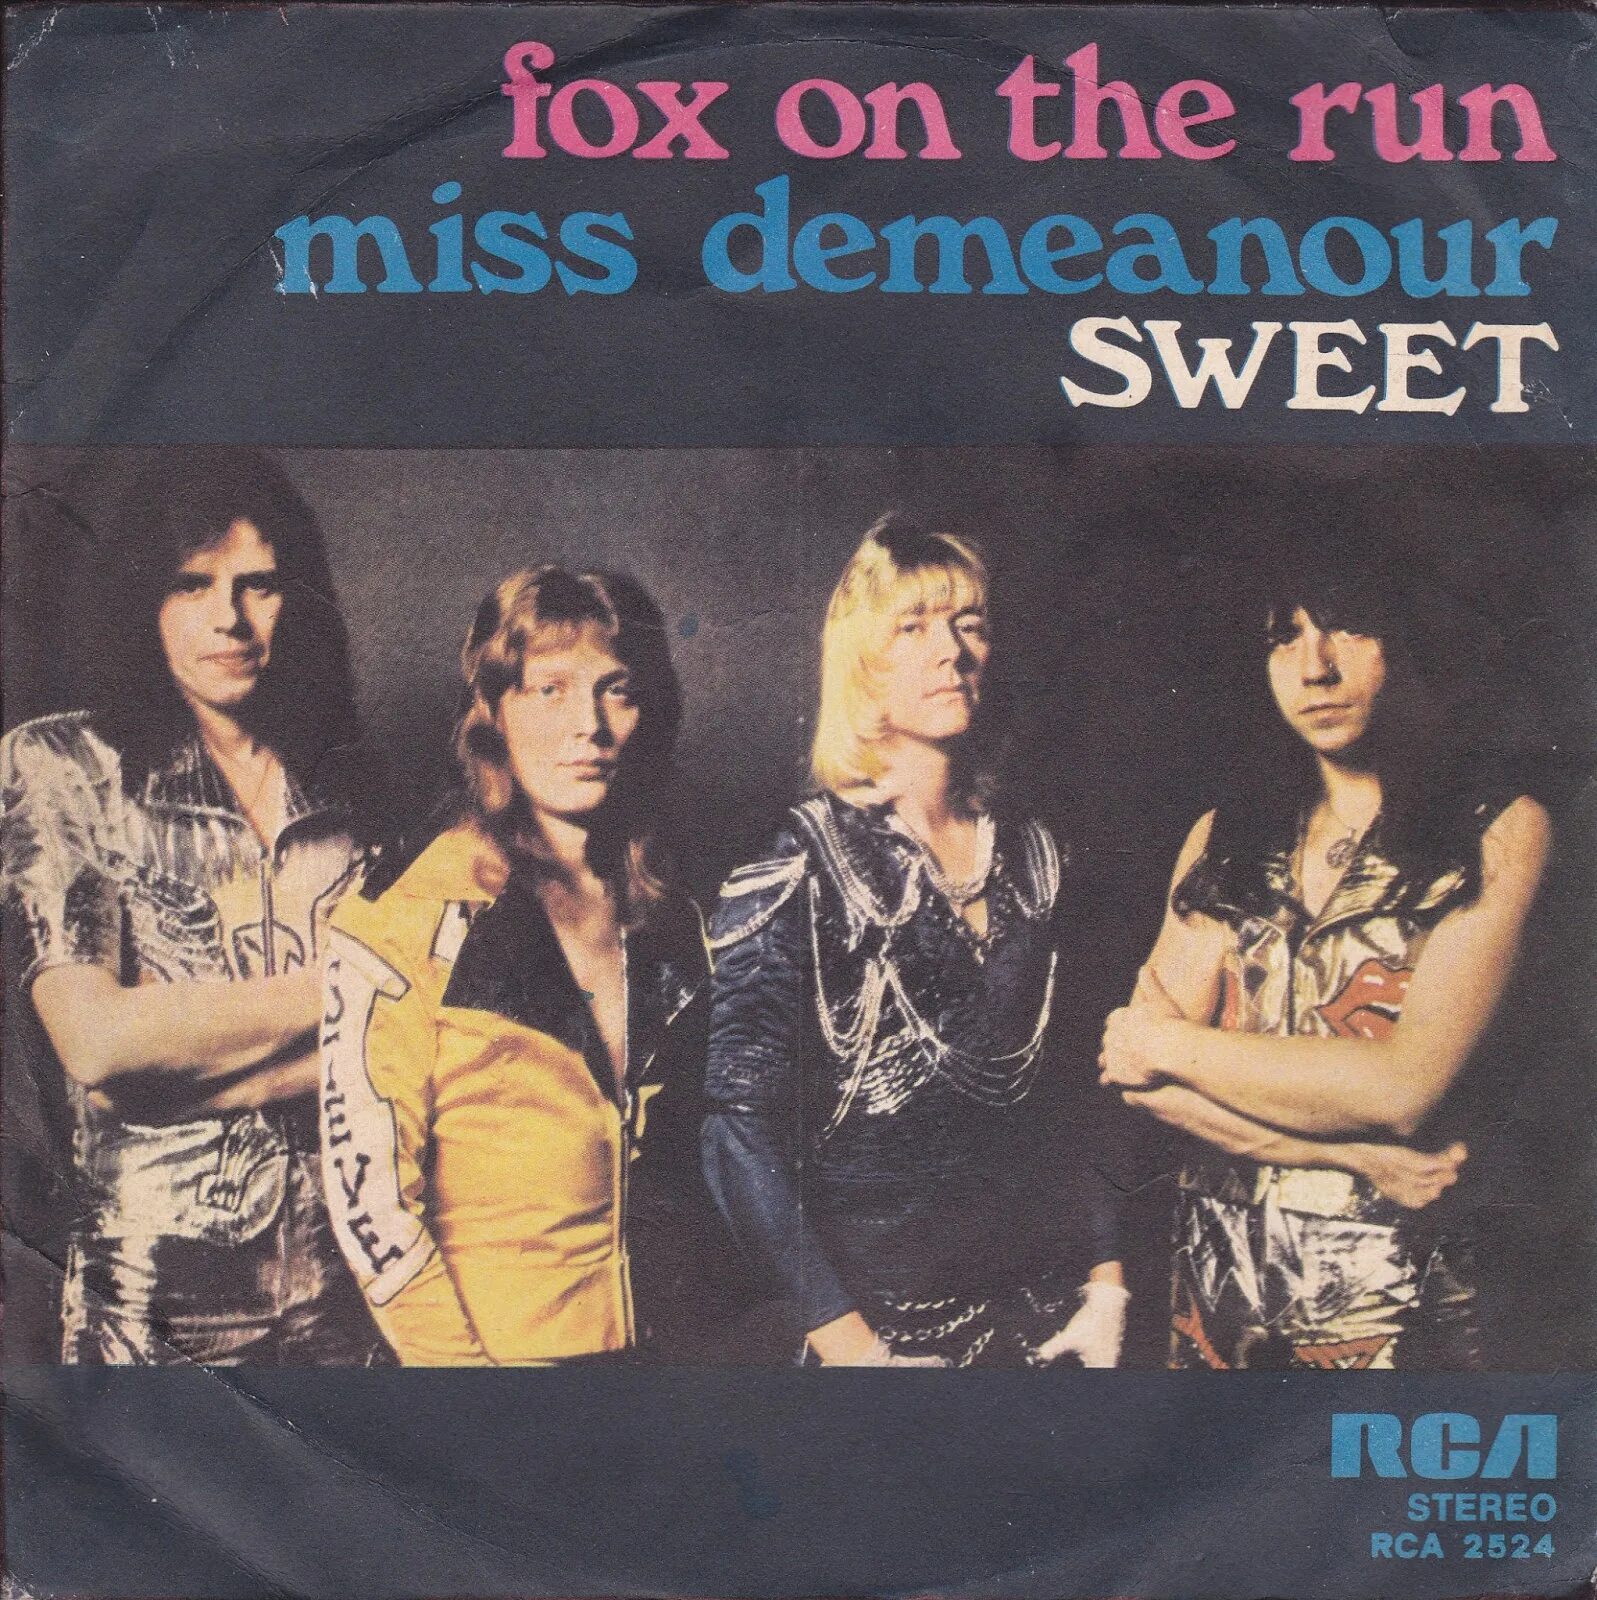 Fox on the Run-1975 Sweet. Fox on the Run группы the Sweet.. Sweet. Группа Sweet альбомы.